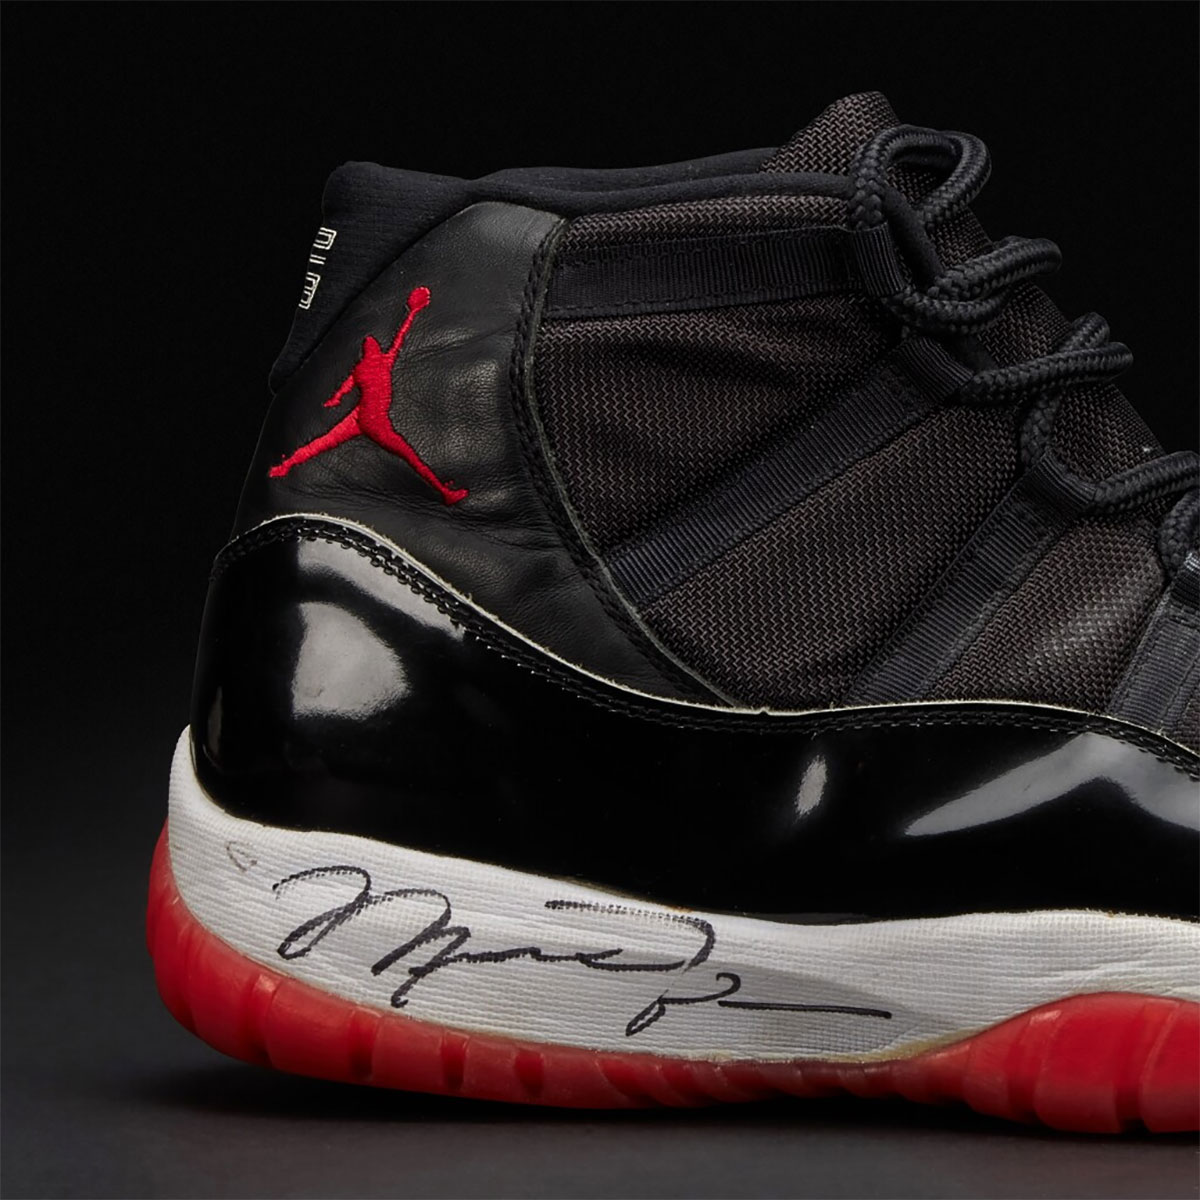 Air Jordan 11 Game Worn Autographed Shoes 1996 Finals Auction 5